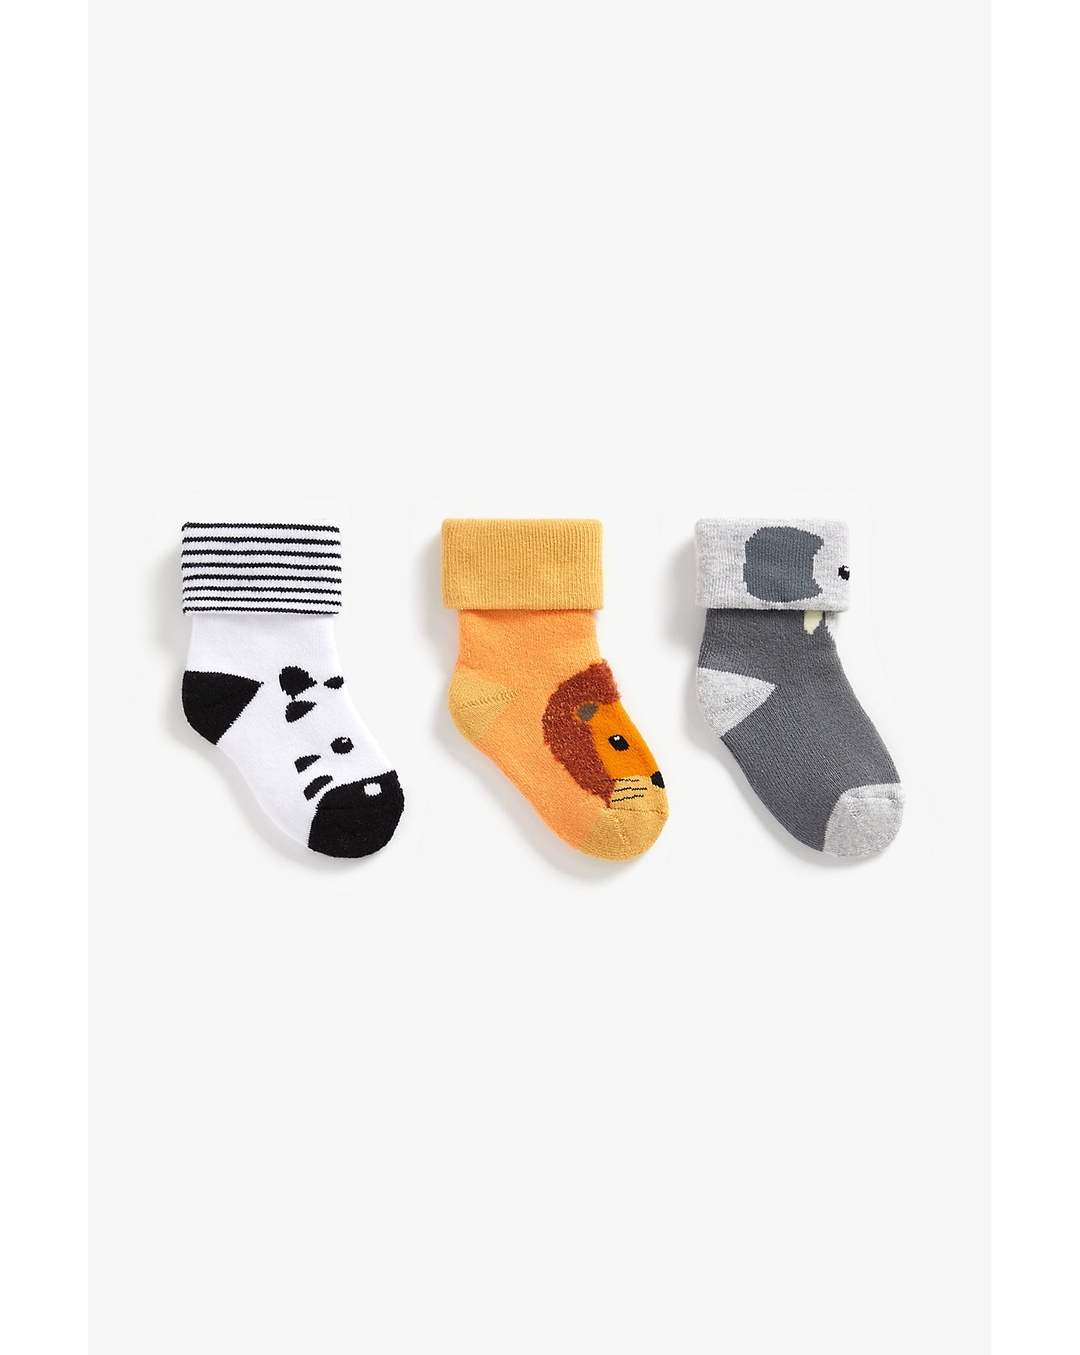 Buy Boys turn-over-top socks animal design - Pack of 3